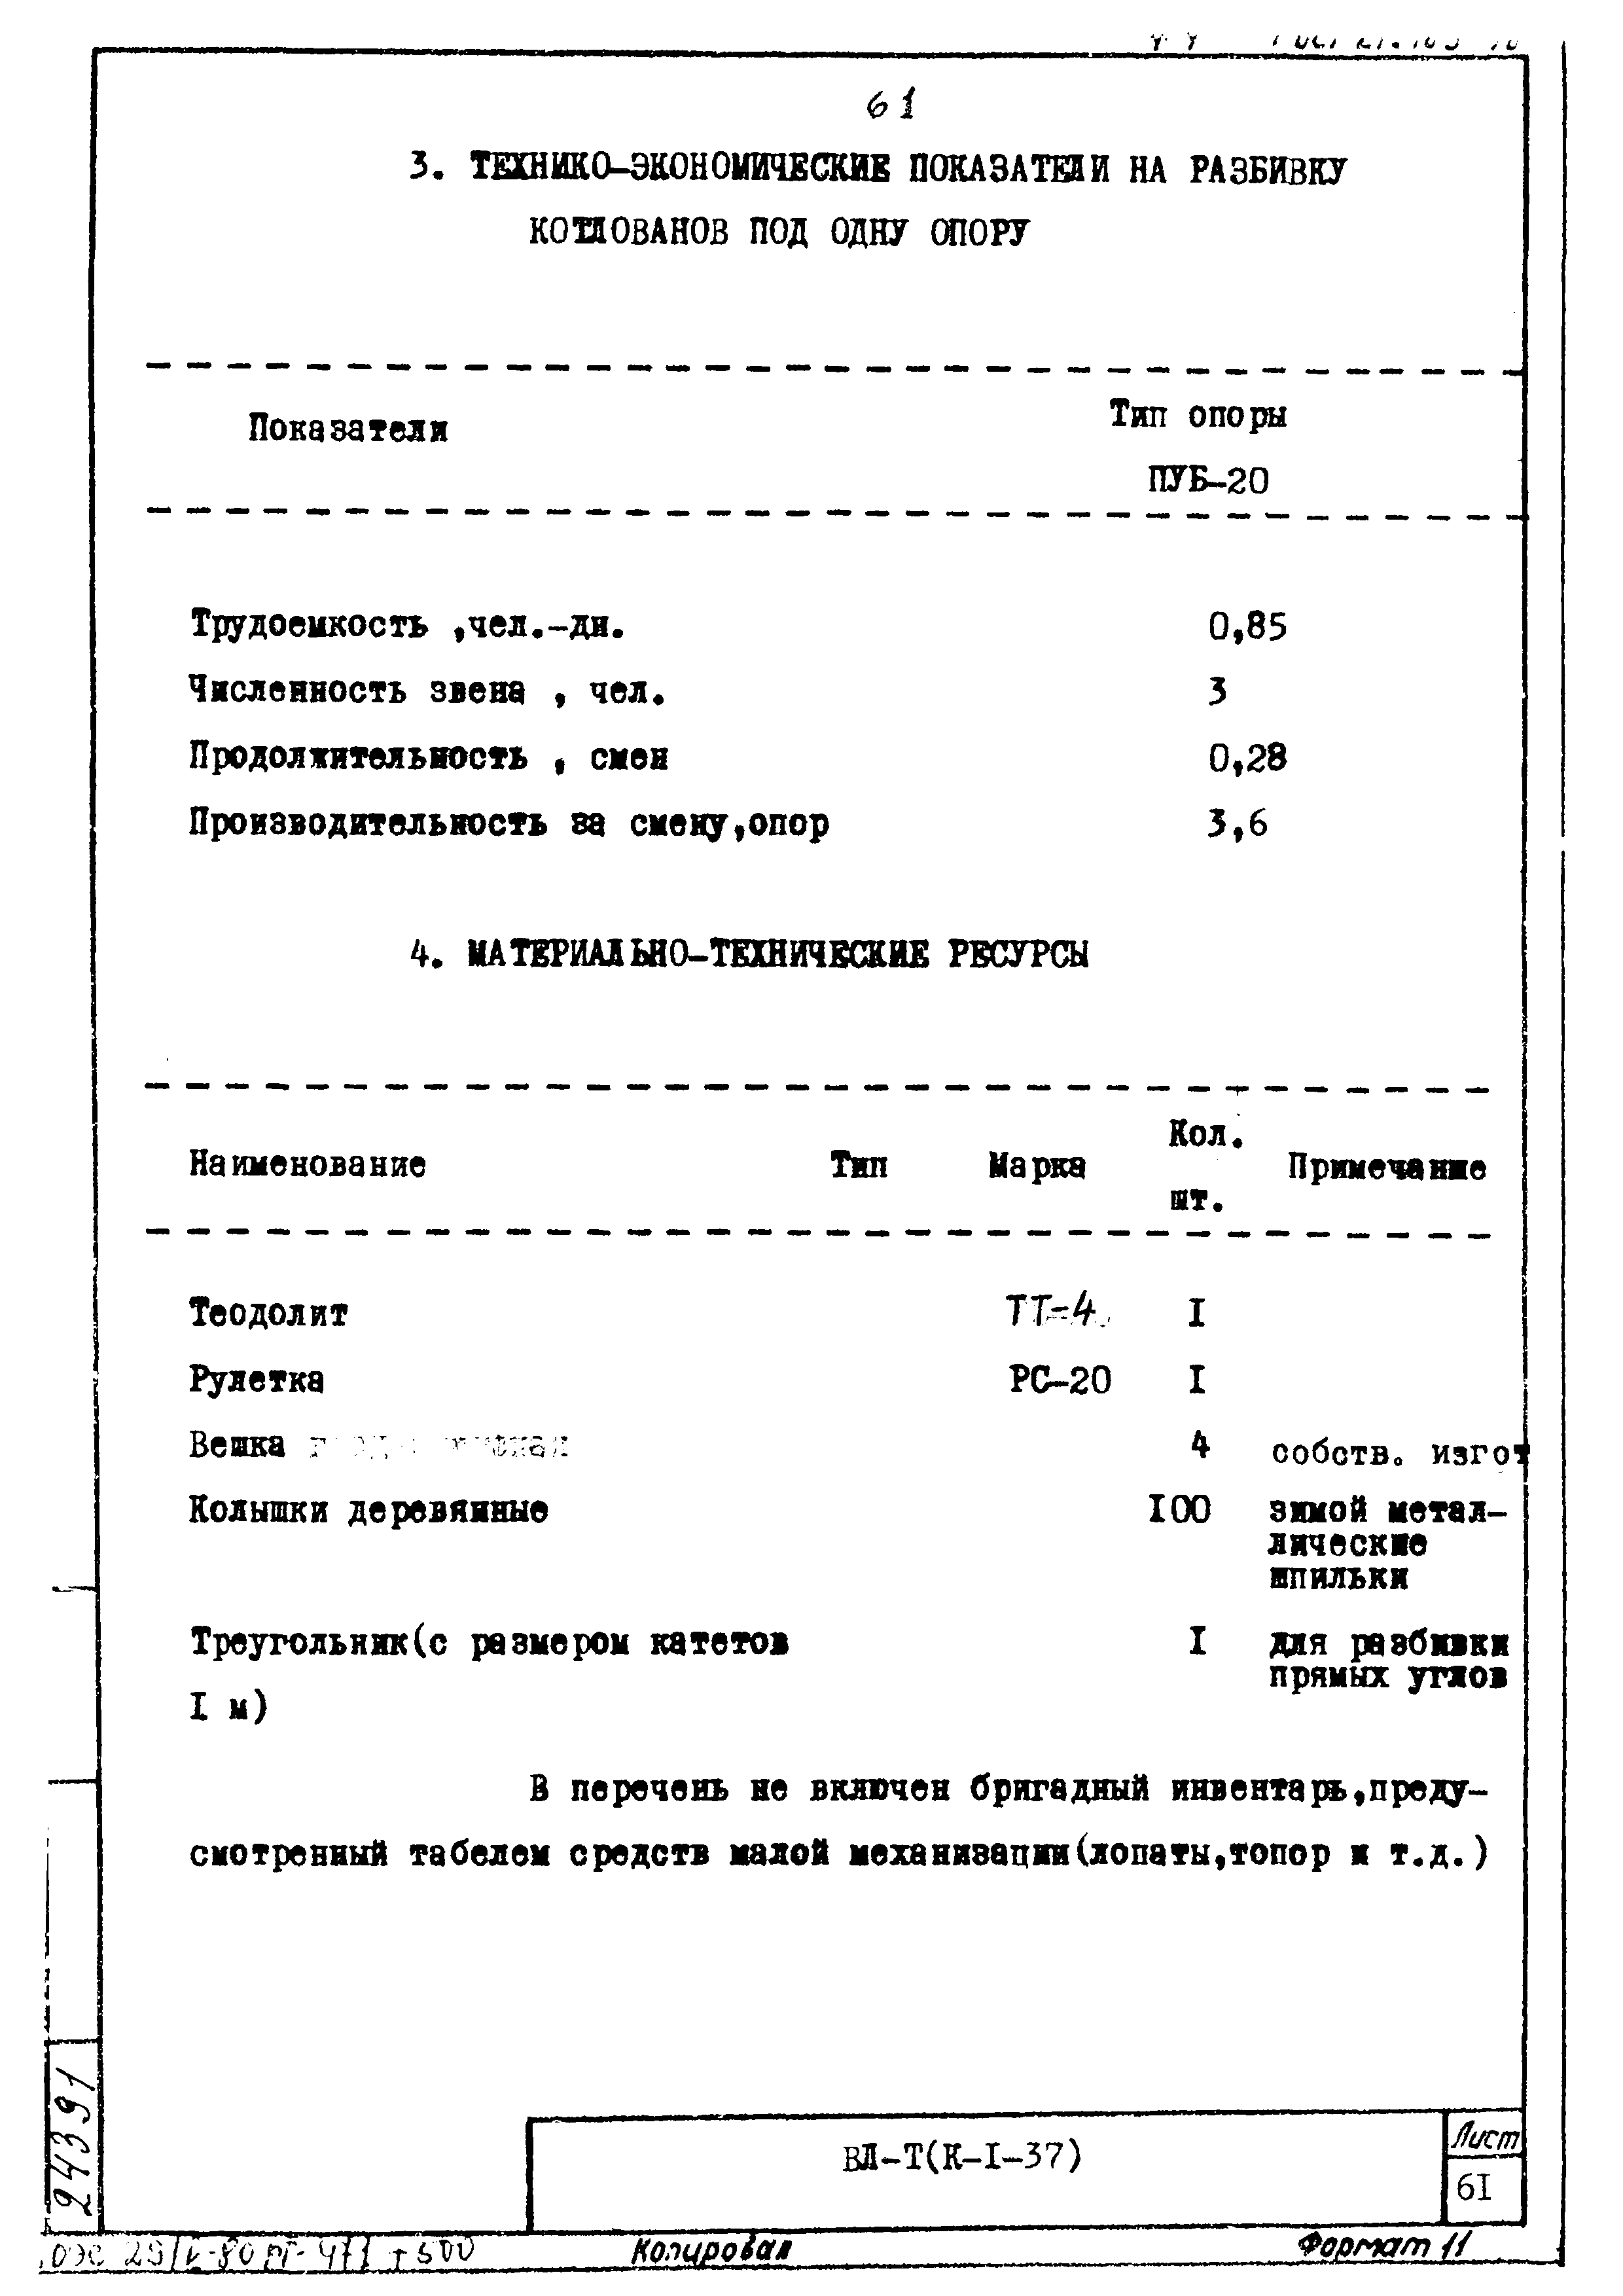 ТК К-I-37-5